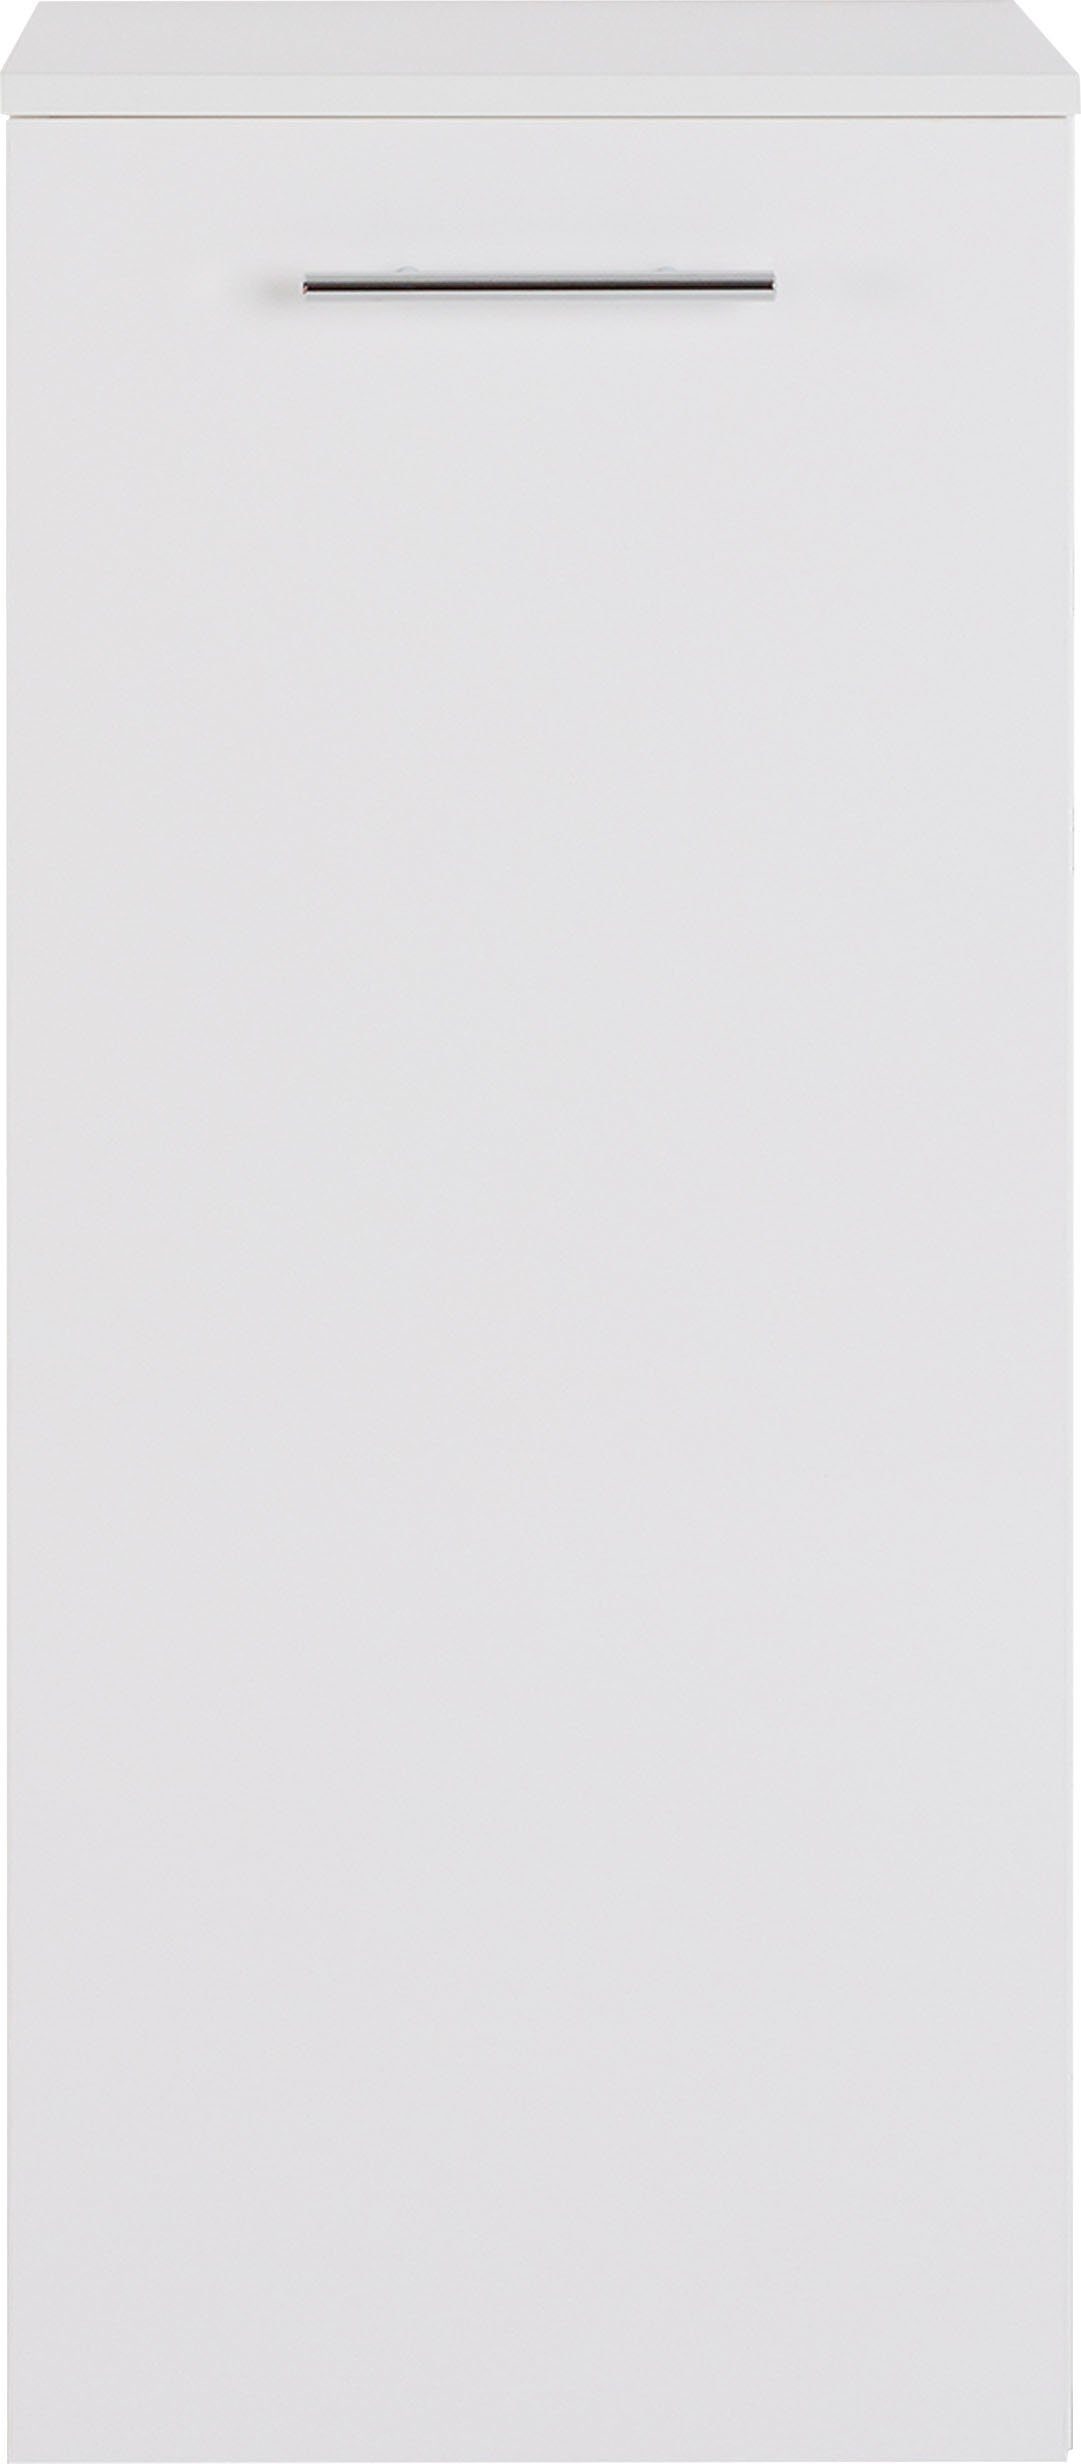 MARLIN Midischrank 3040, Breite 40 weiß weiß cm 